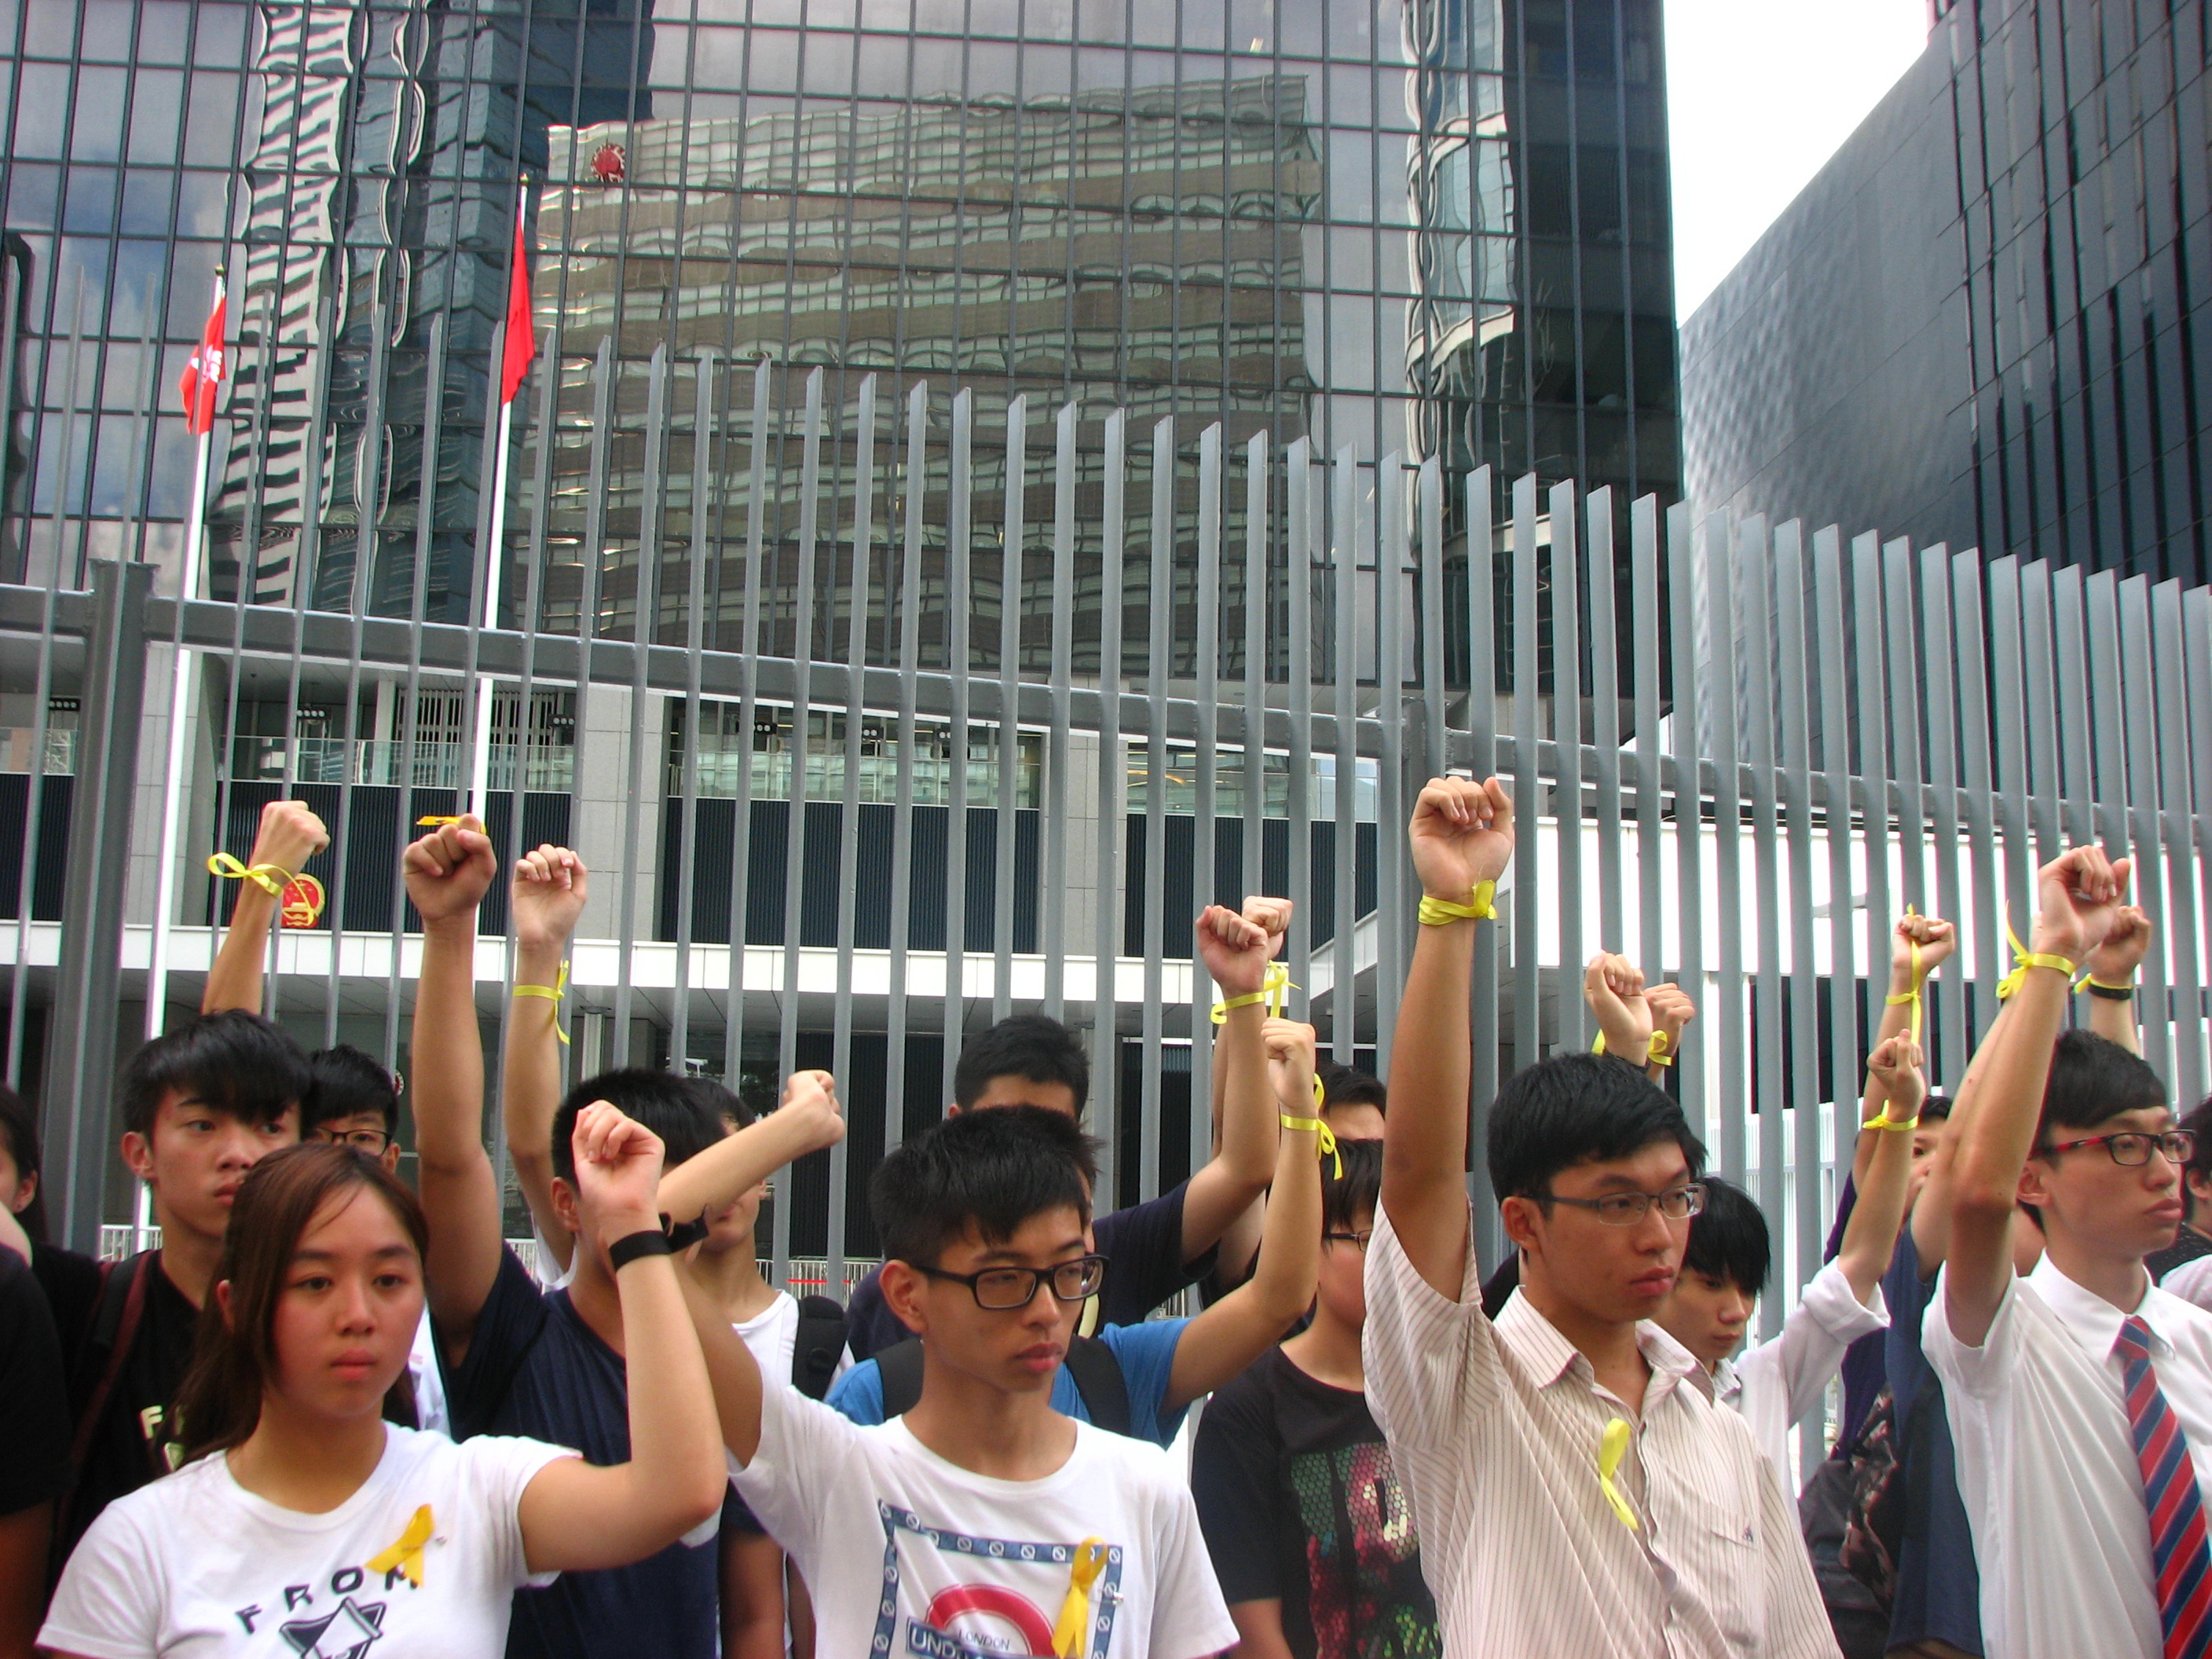 RFA providing coverage of Hong Kong protests